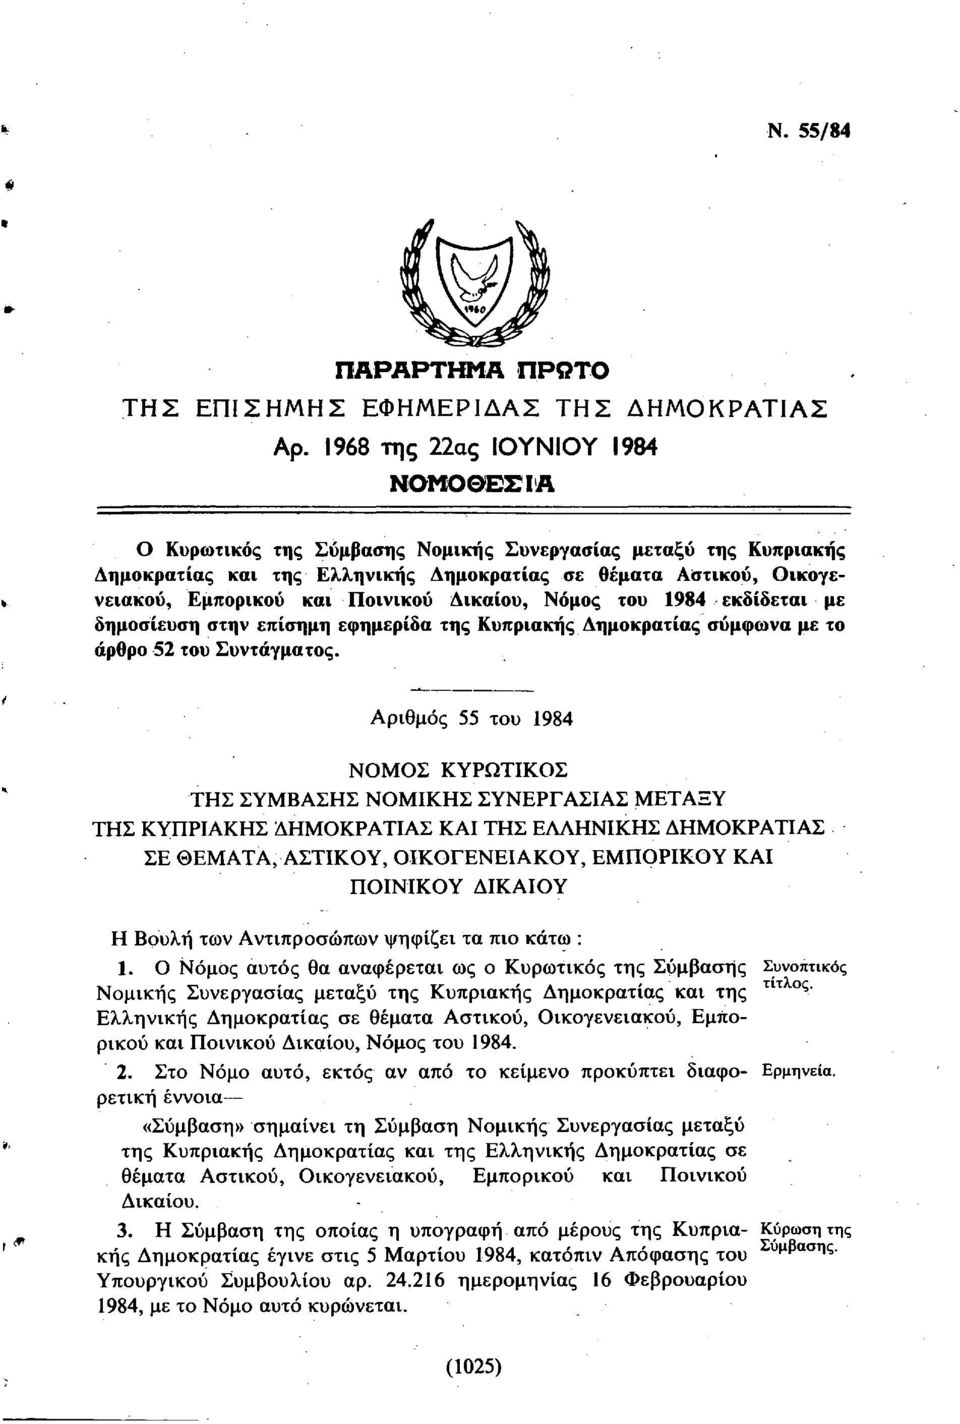 Ποινικού Δικαίου, Νόμος του 1984 εκδίδεται με δημοσίευση στην επίσημη εφημερίδα της Κυπριακής Δημοκρατίας σύμφωνα με το άρθρο 52 του Συντάγματος.